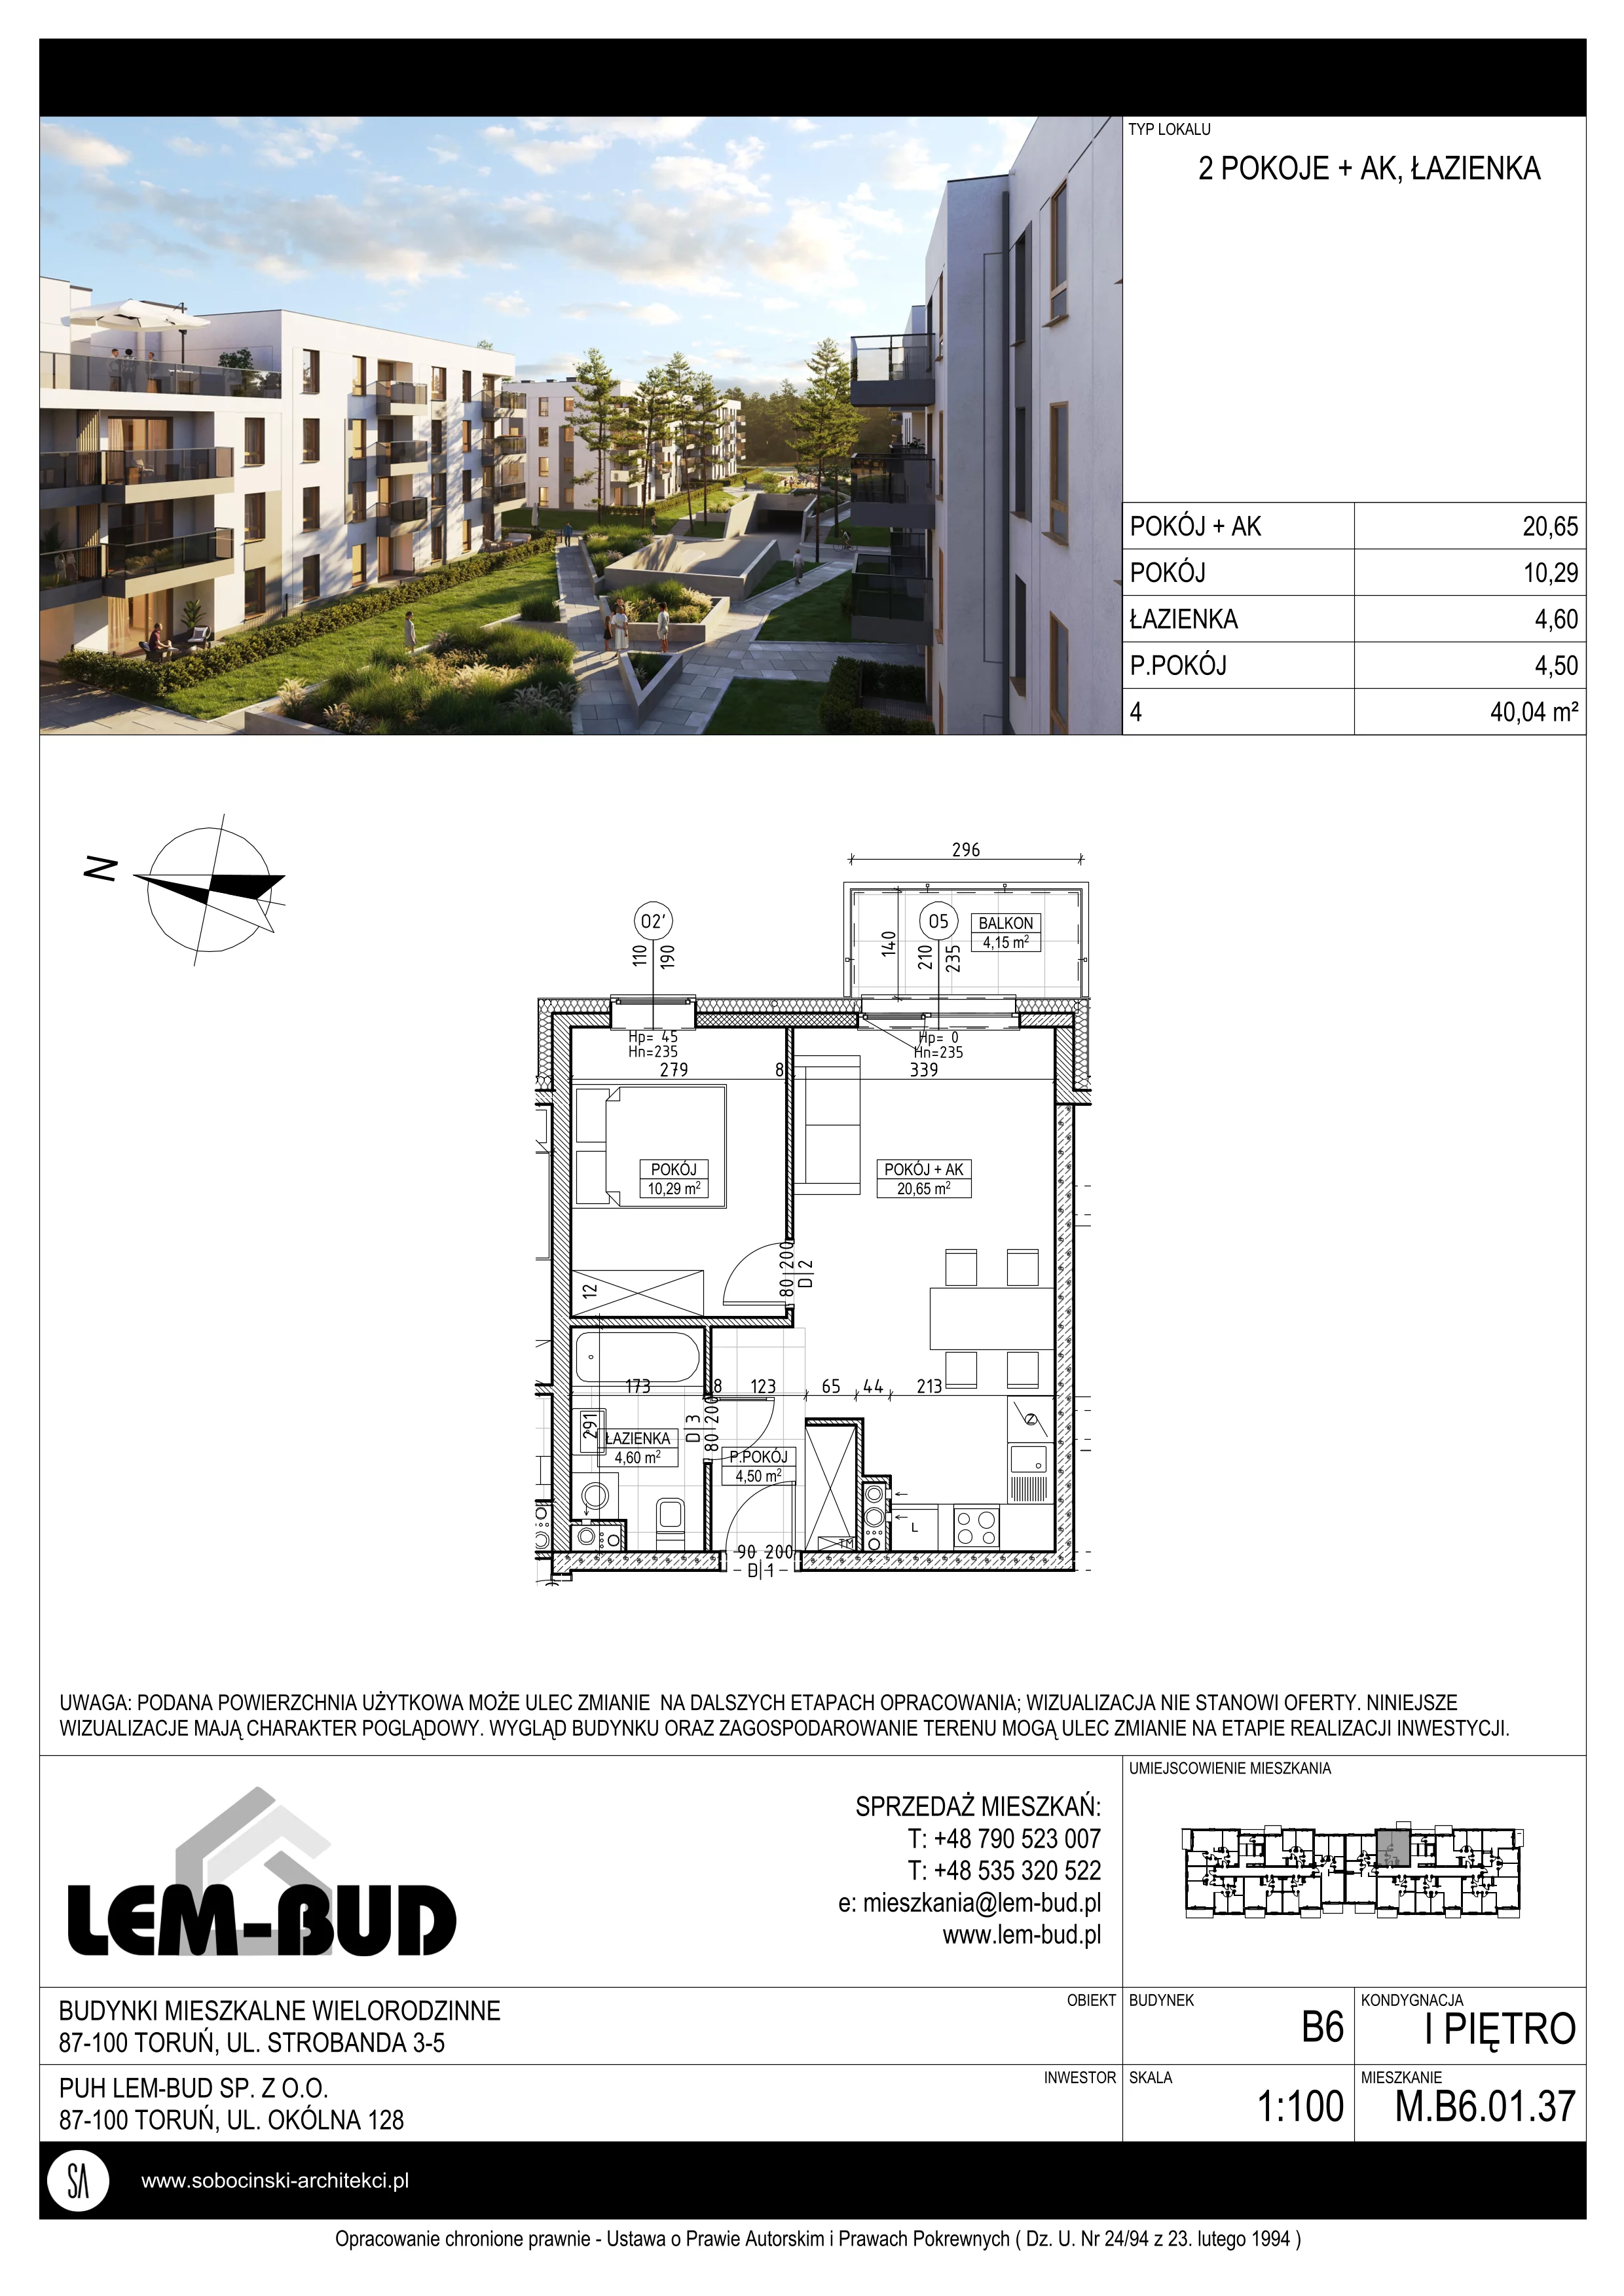 Mieszkanie 40,04 m², piętro 1, oferta nr M.B6.01.37, Osiedle Harmonia, Toruń, Wrzosy, JAR, ul. Strobanda 3-5